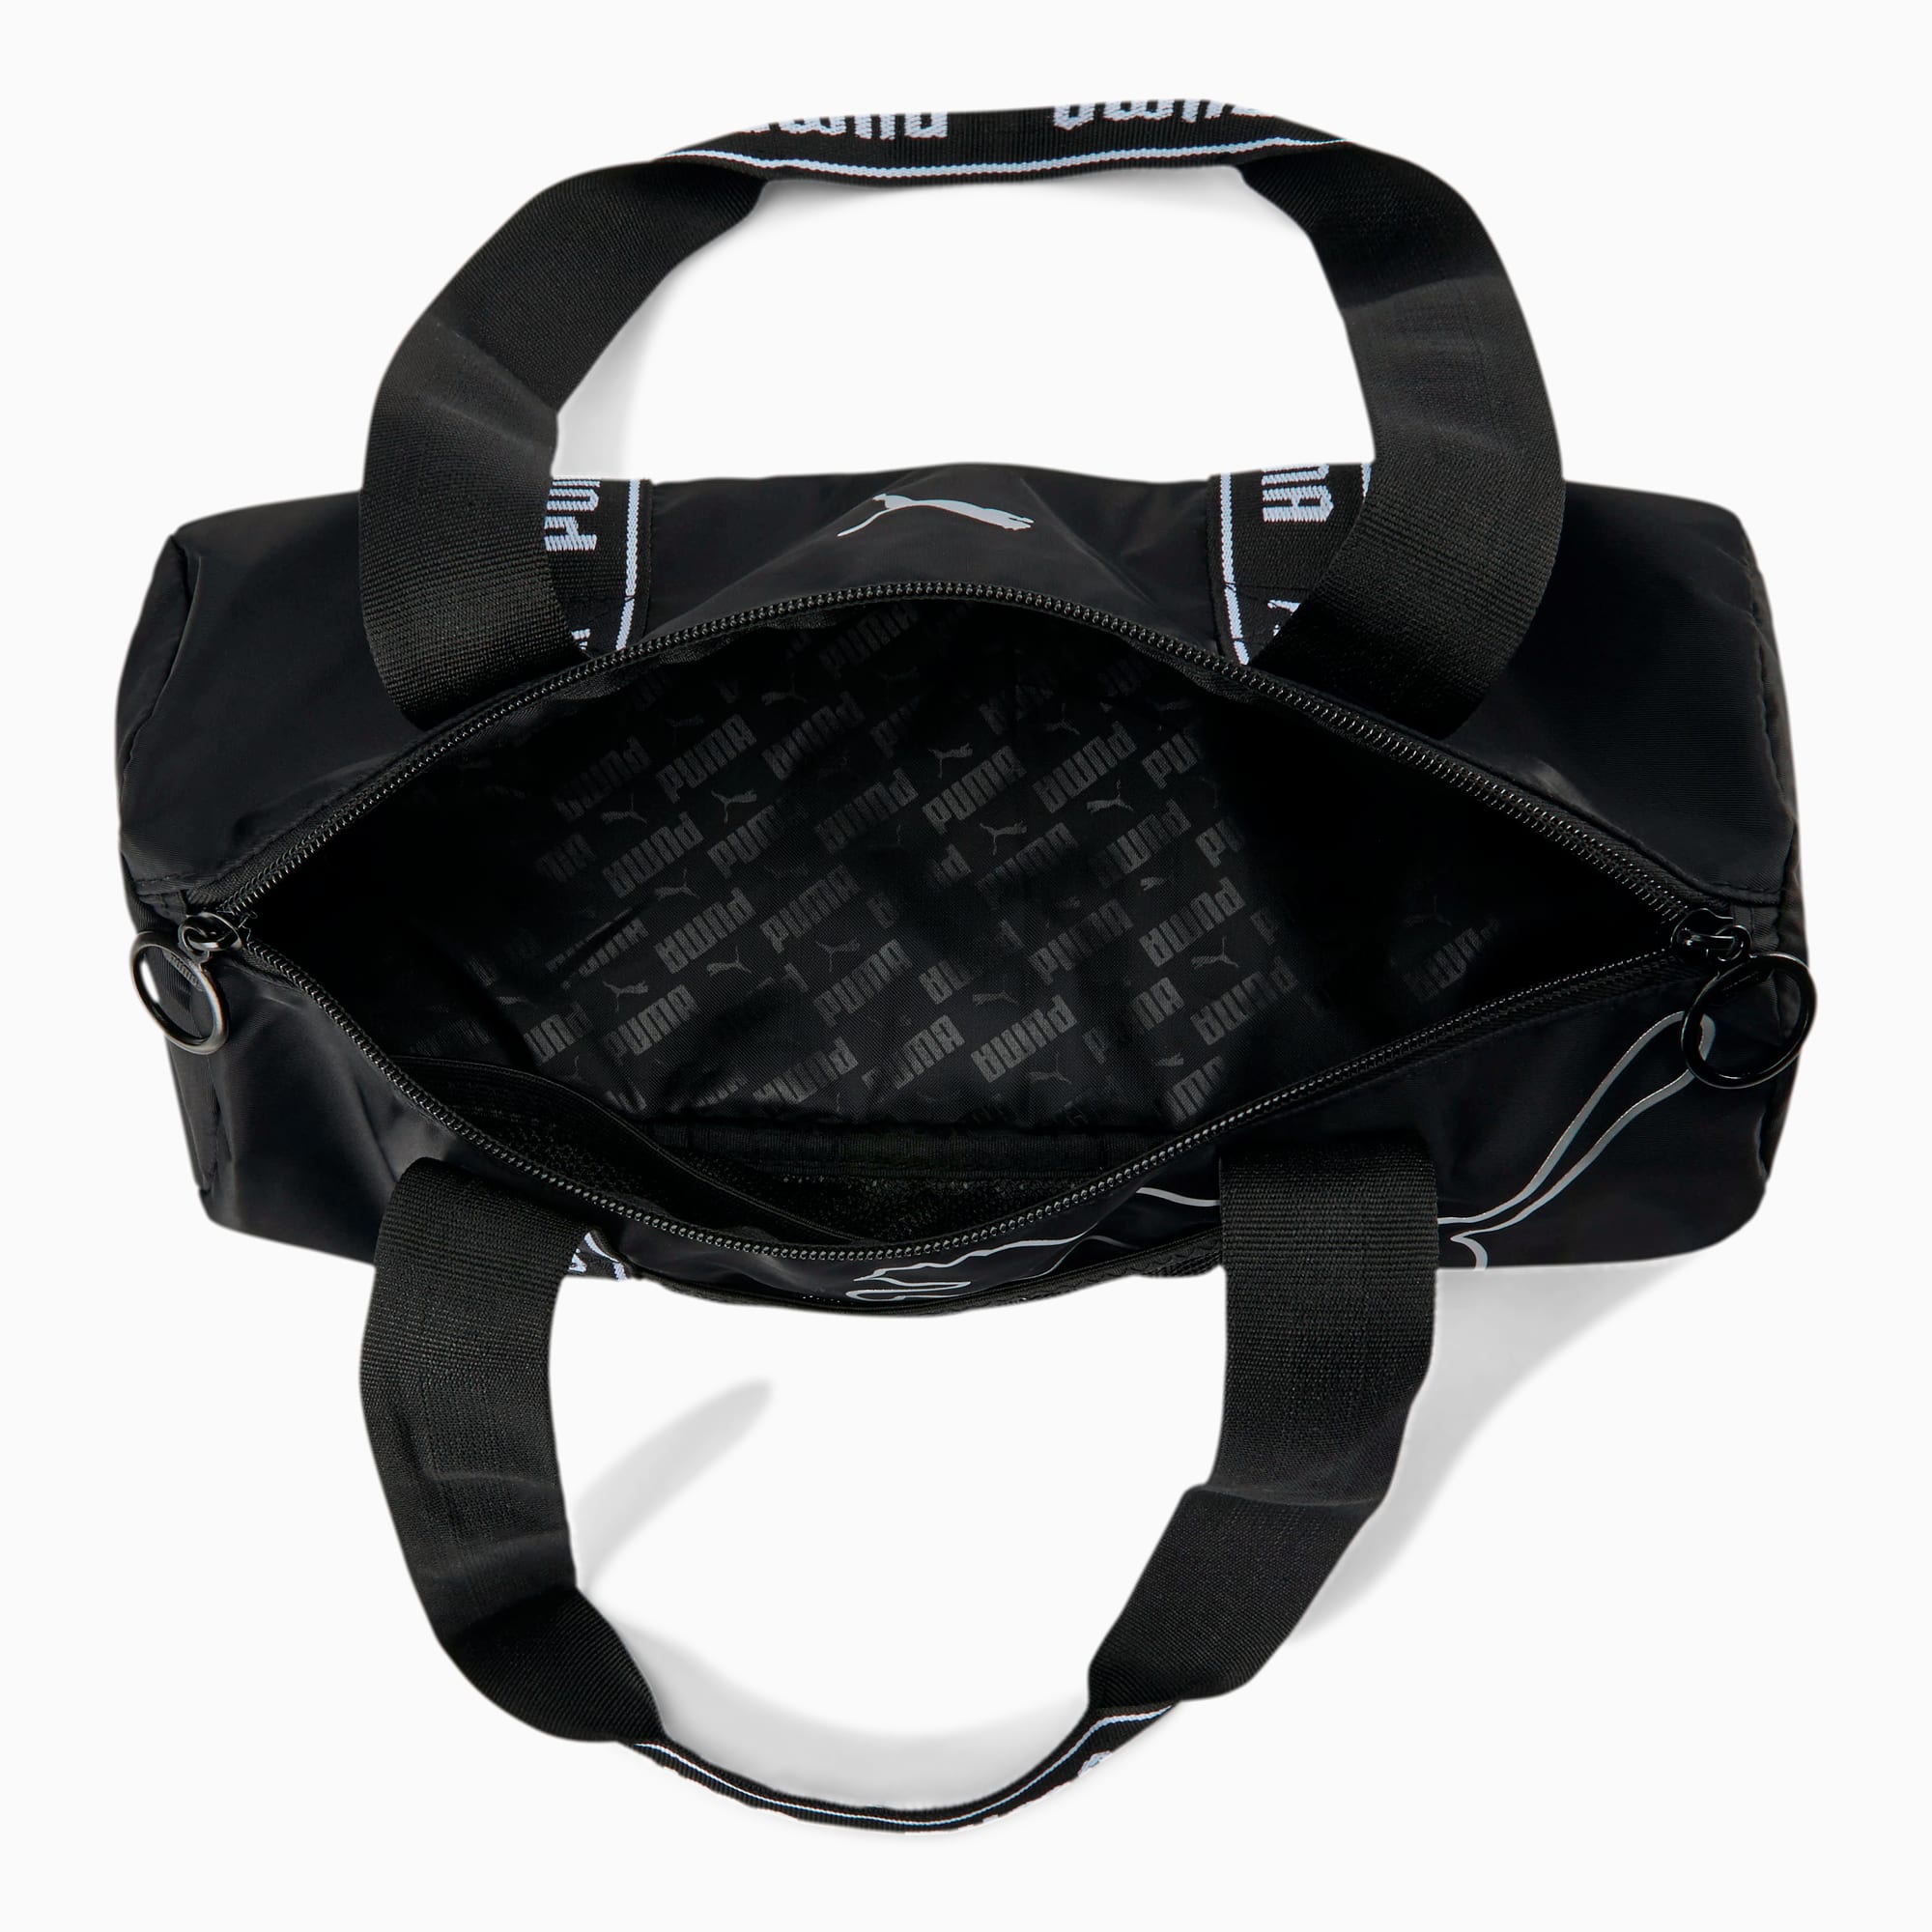  Puma Bag, Mini Bag, Accessory Holder, Phase, Mini Mini